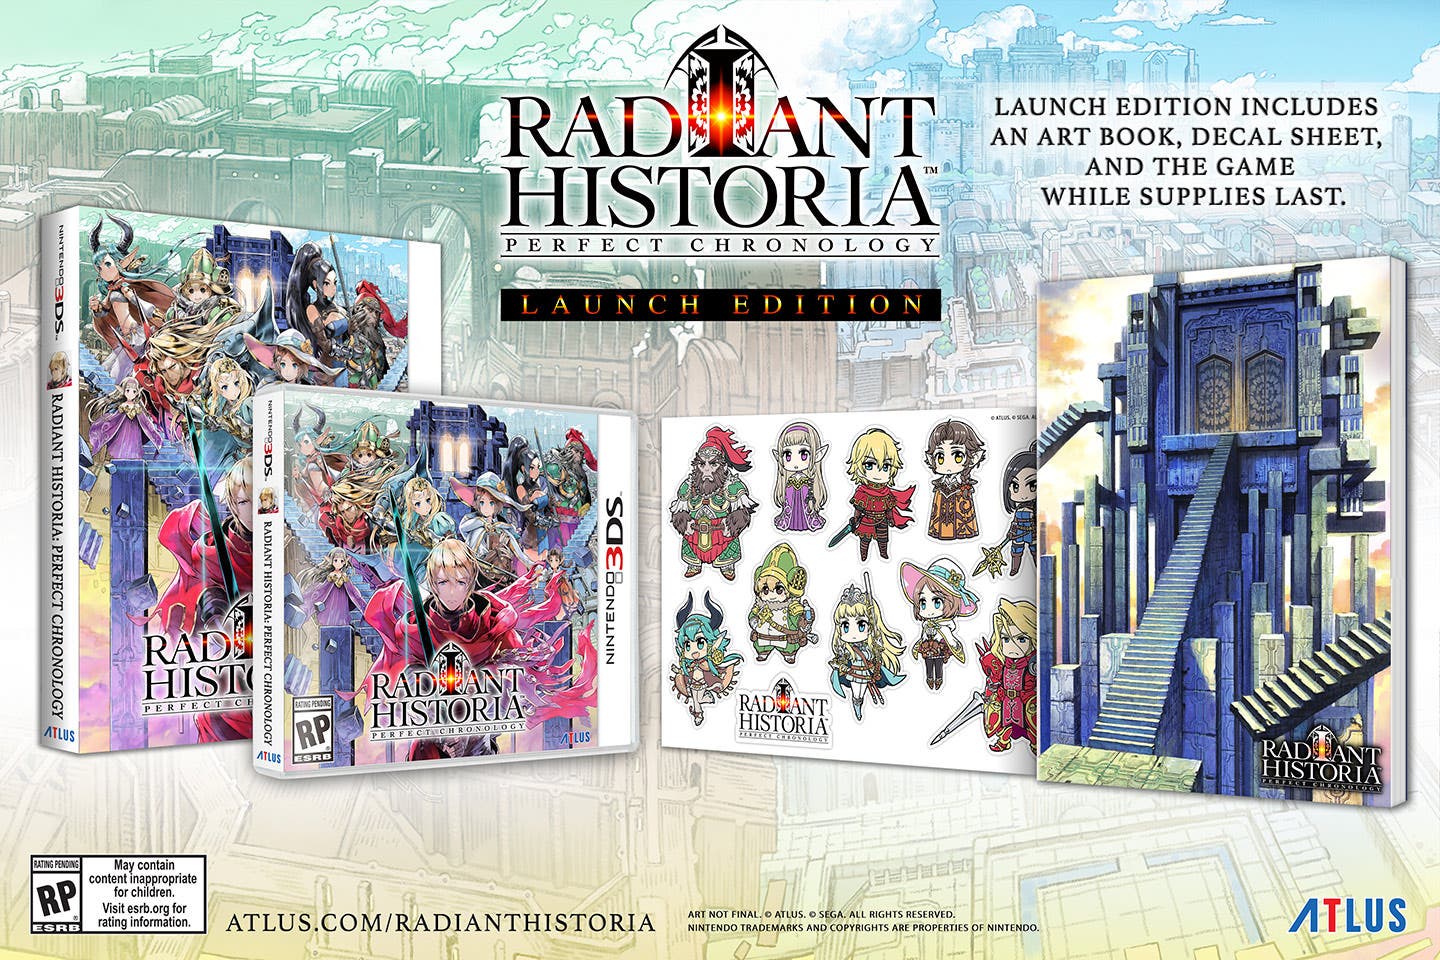 Se anuncia Radiant Historia: Perfect Chronology Launch Edition y llegará a principios de 2018